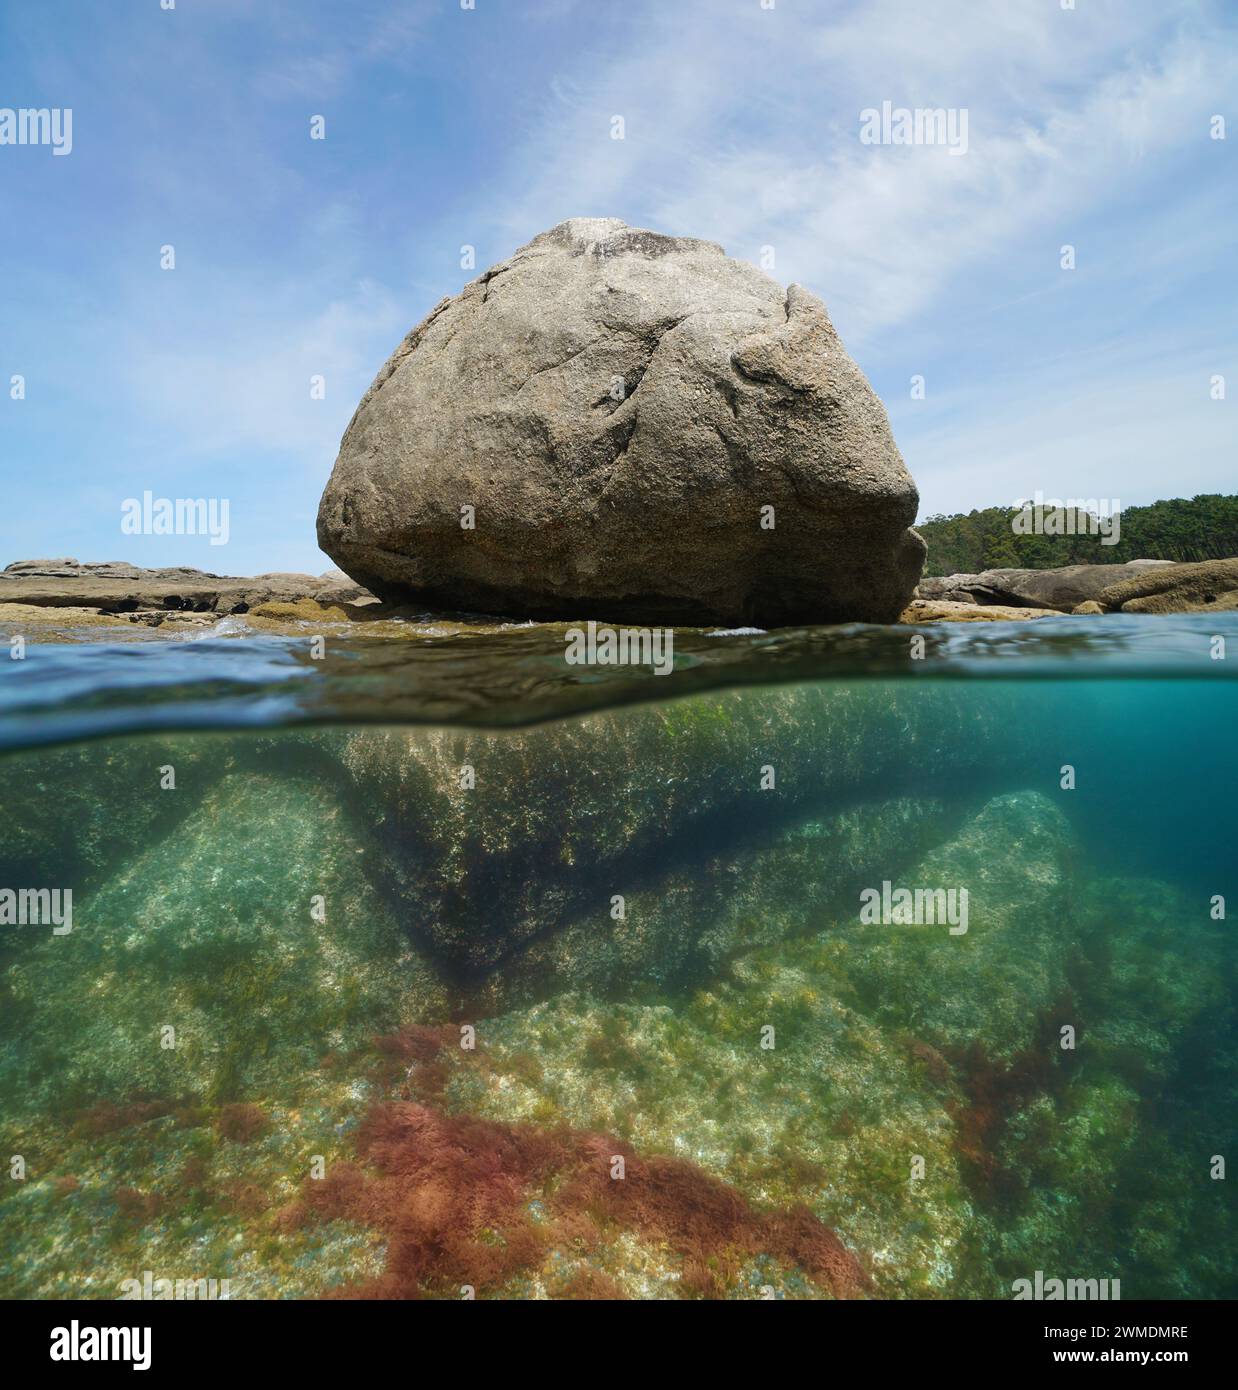 Granitfelsen am Meeresufer, geteilter Blick zur Hälfte über und unter der Wasseroberfläche, natürliche Szene, Atlantikküste in Spanien, Galicien, Rias Baixas Stockfoto